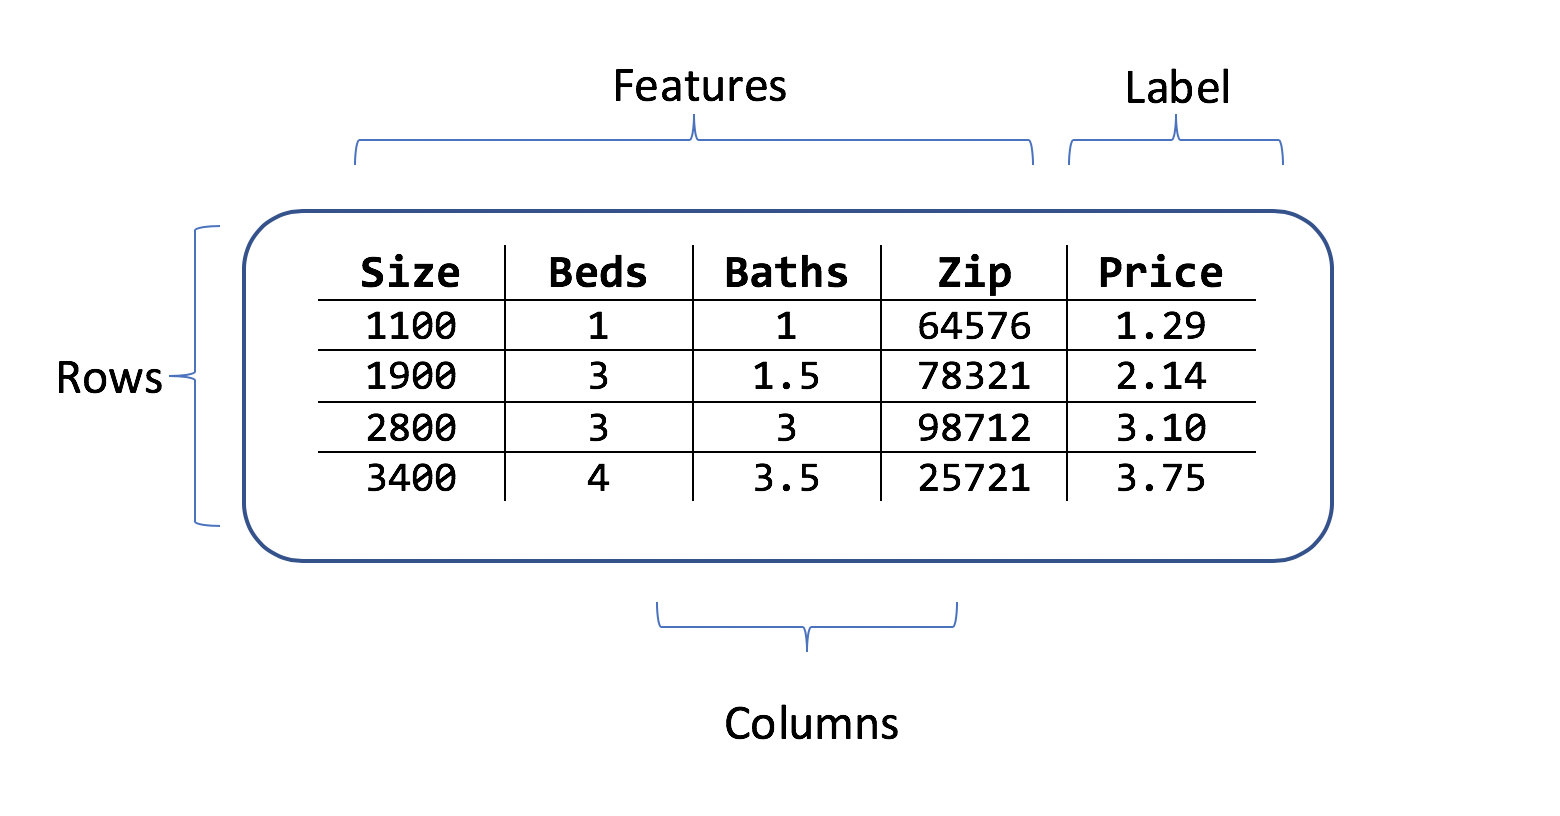 크기 객실 우편 번호 및 가격 레이블로 구성된 기능을 갖춘 주택 가격 데이터의 행과 열을 보여주는 표